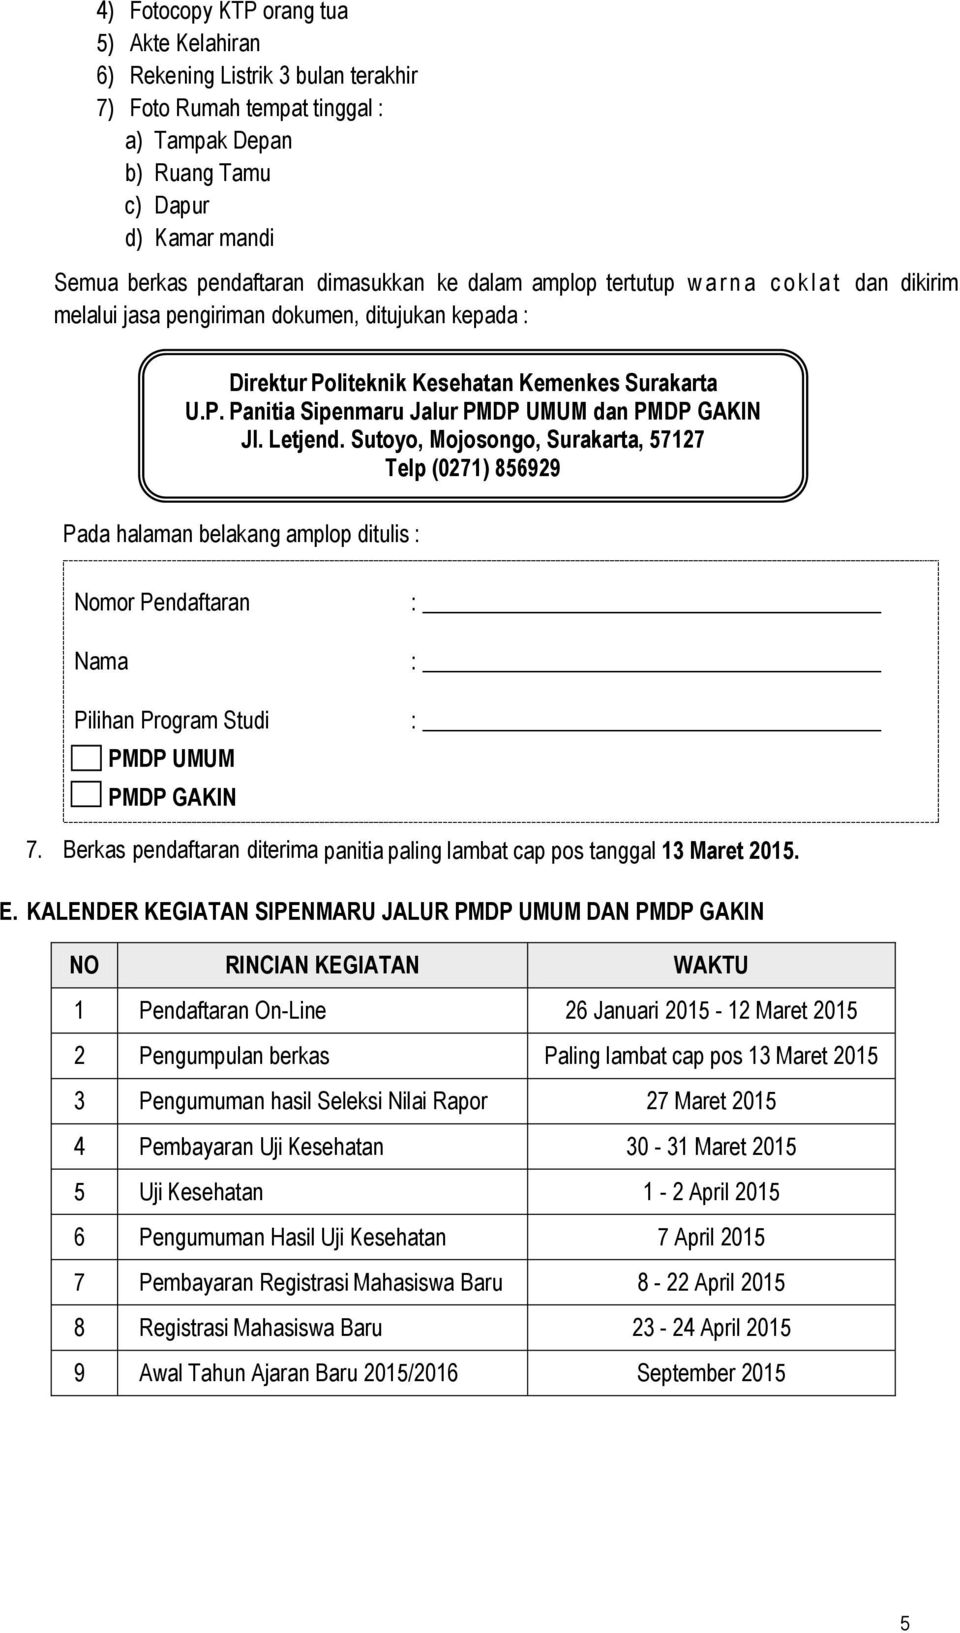 Letjend. Sutoyo, Mojosongo, Surakarta, 57127 Telp (0271) 856929 Pada halaman belakang amplop ditulis : Nomor Pendaftaran Nama Pilihan Program Studi PMDP UMUM PMDP GAKIN : : : 7.